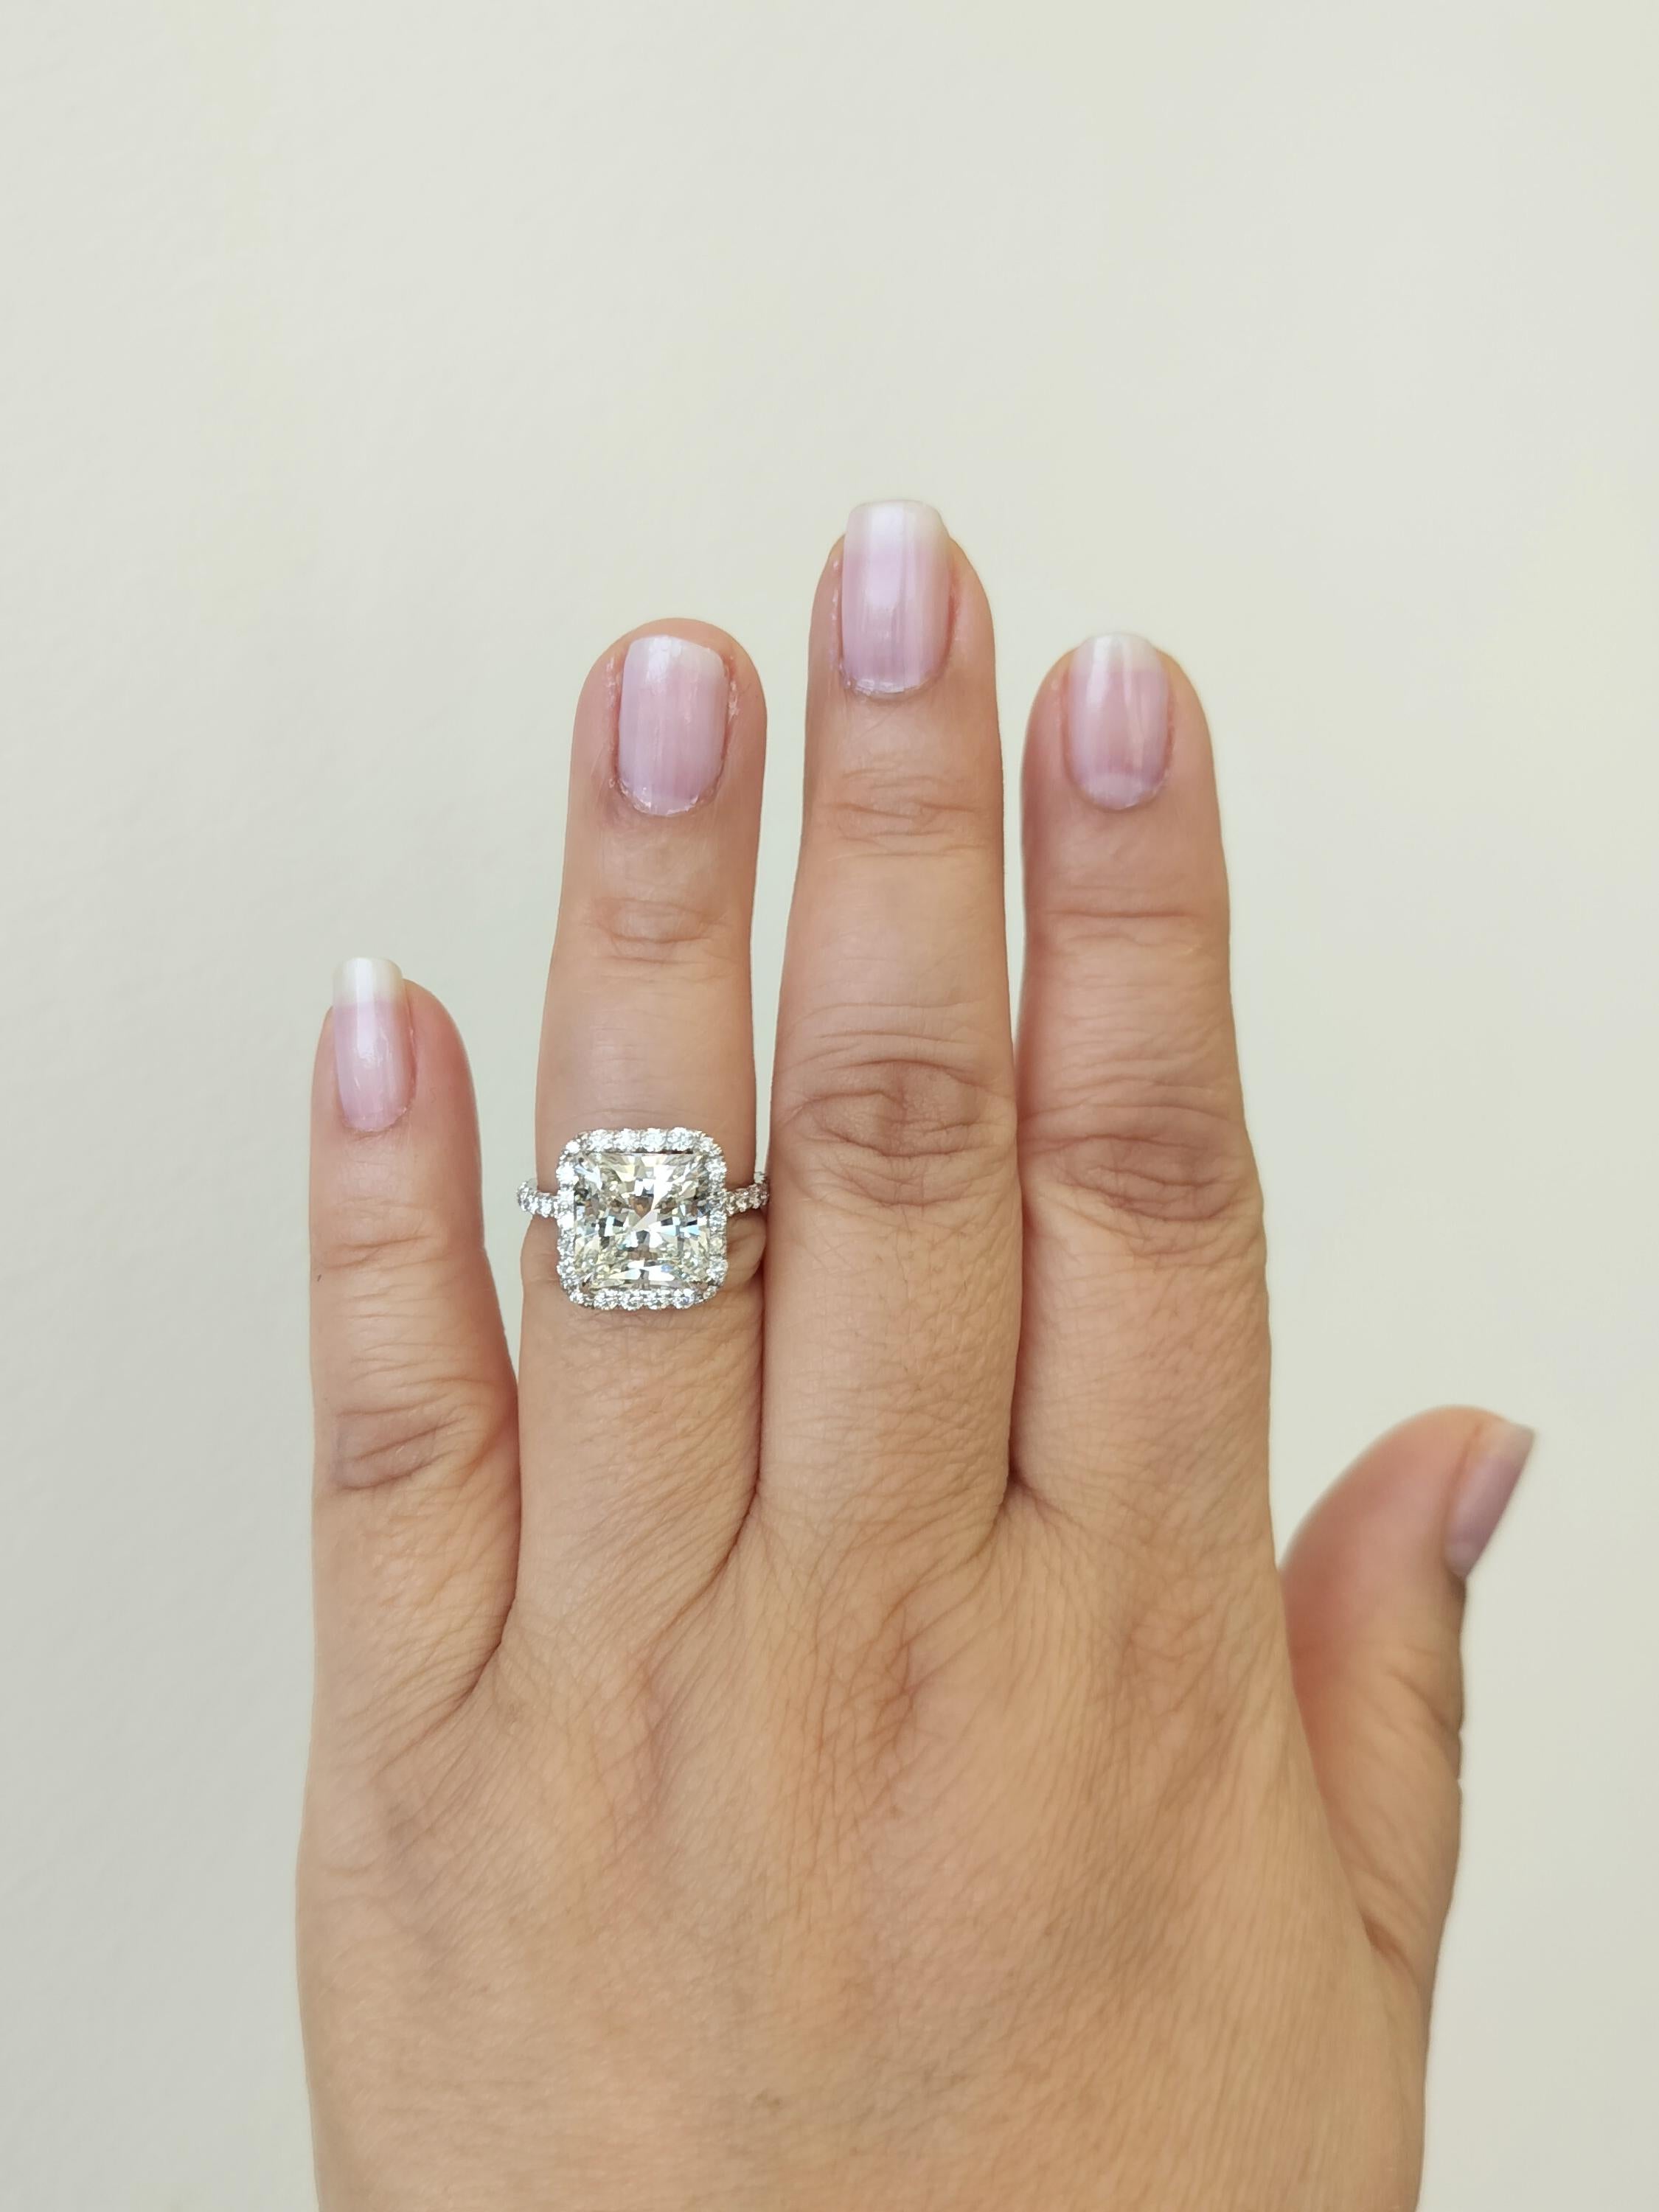 Atemberaubend 5.27 ct. GIA I VS2 weißer Diamant im Strahlenschliff mit kleineren weißen Diamanten von guter Qualität.  Handgefertigt aus 18 Karat Weißgold.  Ring Größe 7.  Ein GIA-Zertifikat liegt bei.